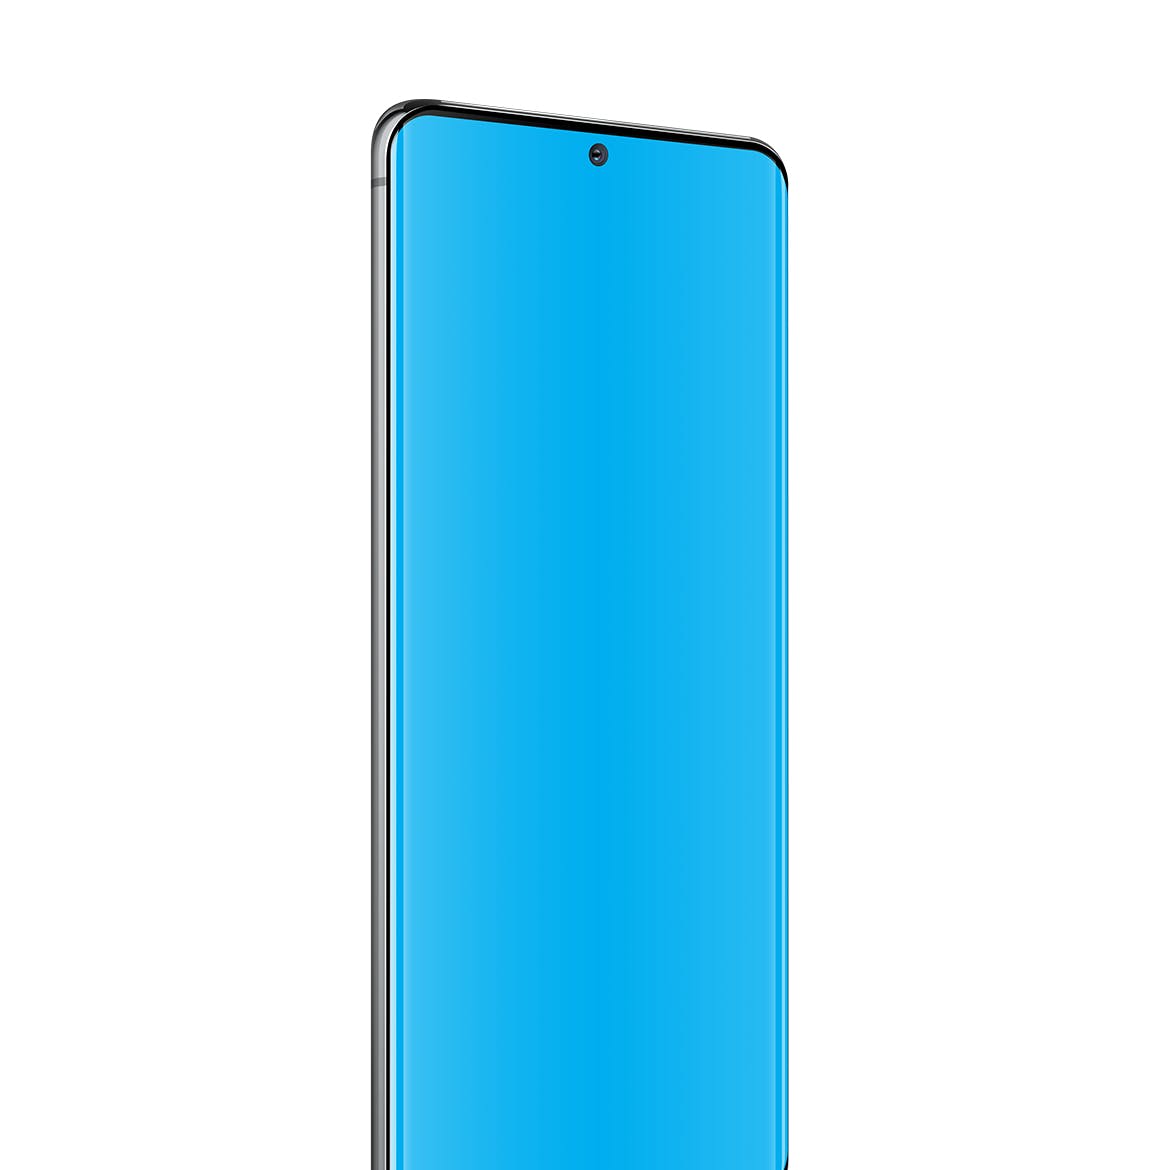 三星Galaxy S20 Ultra智能手机UI设计屏幕预览素材中国精选样机 S20 Ultra Layered PSD Mockups插图(3)